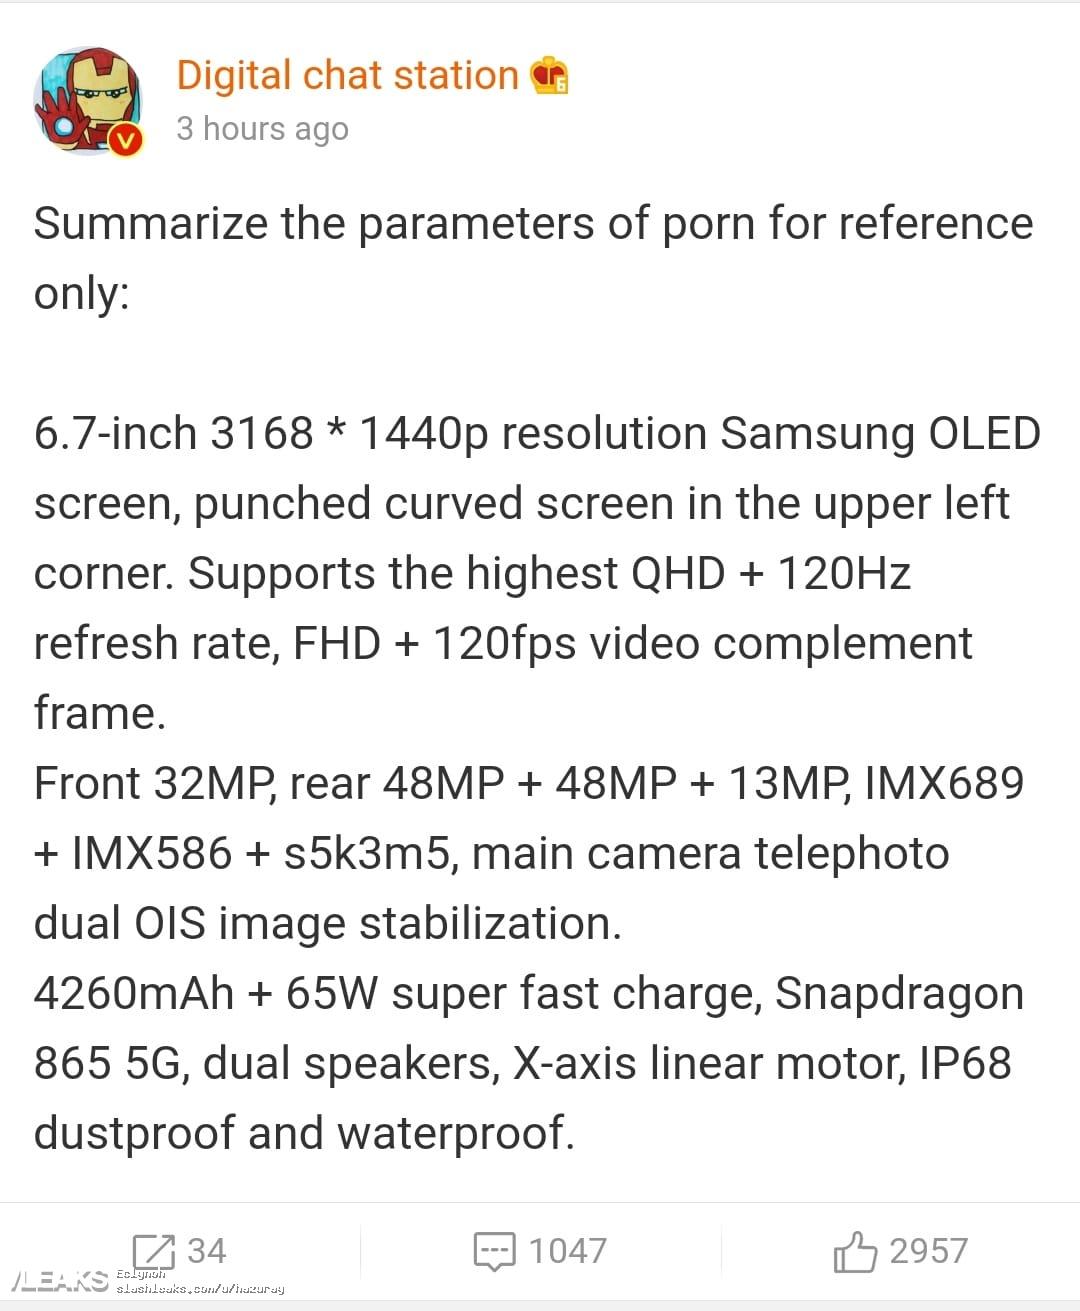 OPPO Find X2 lộ thông
tin cấu hình với Snapdragon 865, màn hình 2K 120Hz, 3 camera
sau, sạc nhanh 65W